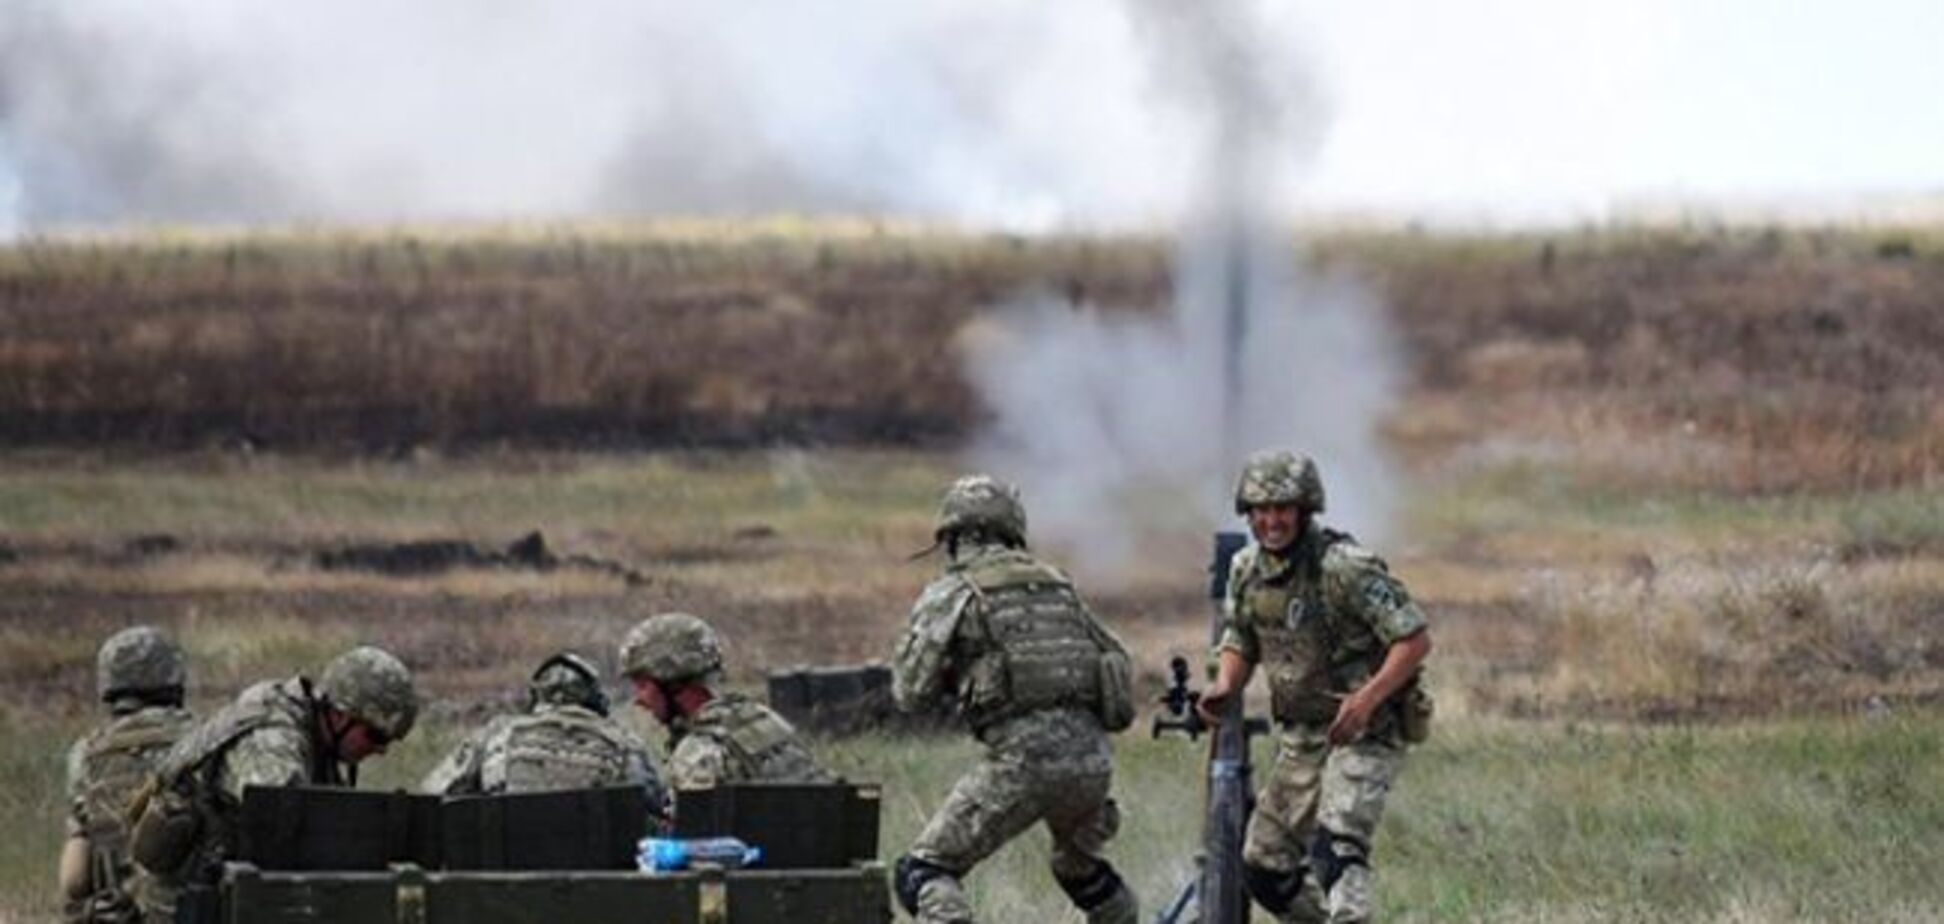 Бои на Донбассе: террористы ''Л/ДНР'' решились устроить перестрелку с ВСУ